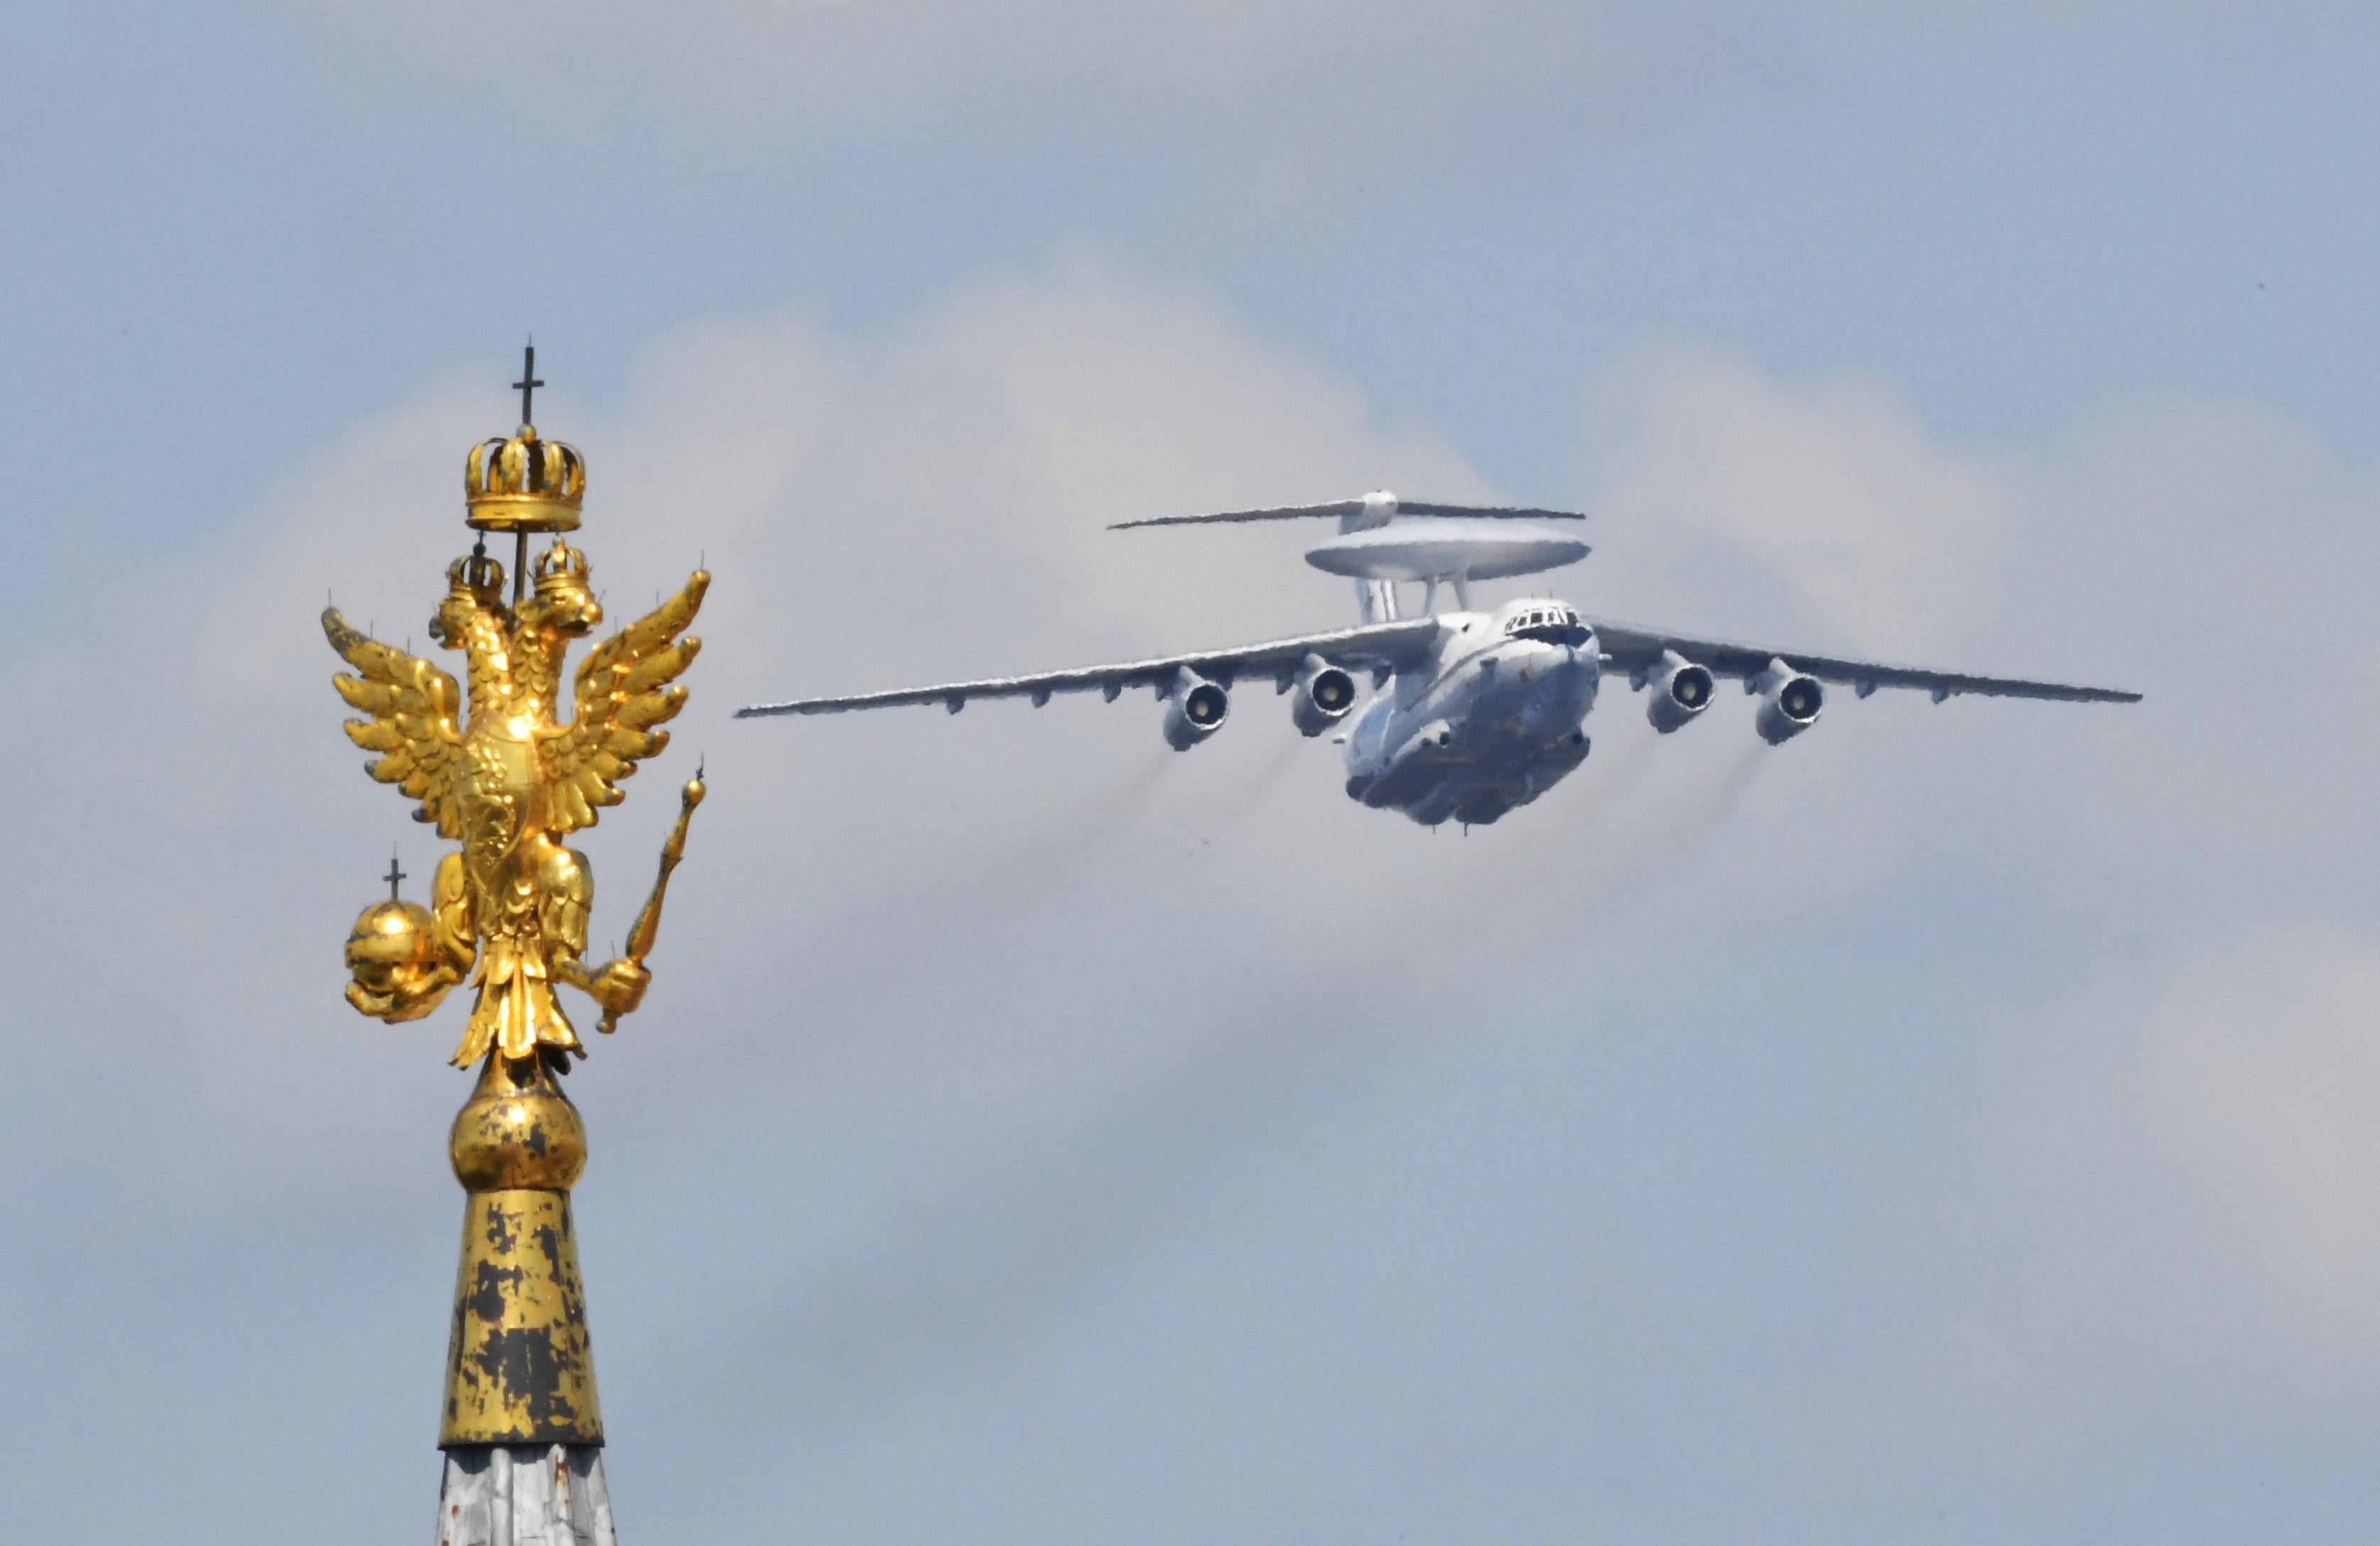 Rusko uzemnilo svá letadla poté, co ztratilo pokročilé špionážní letadlo A-50: Kyjev